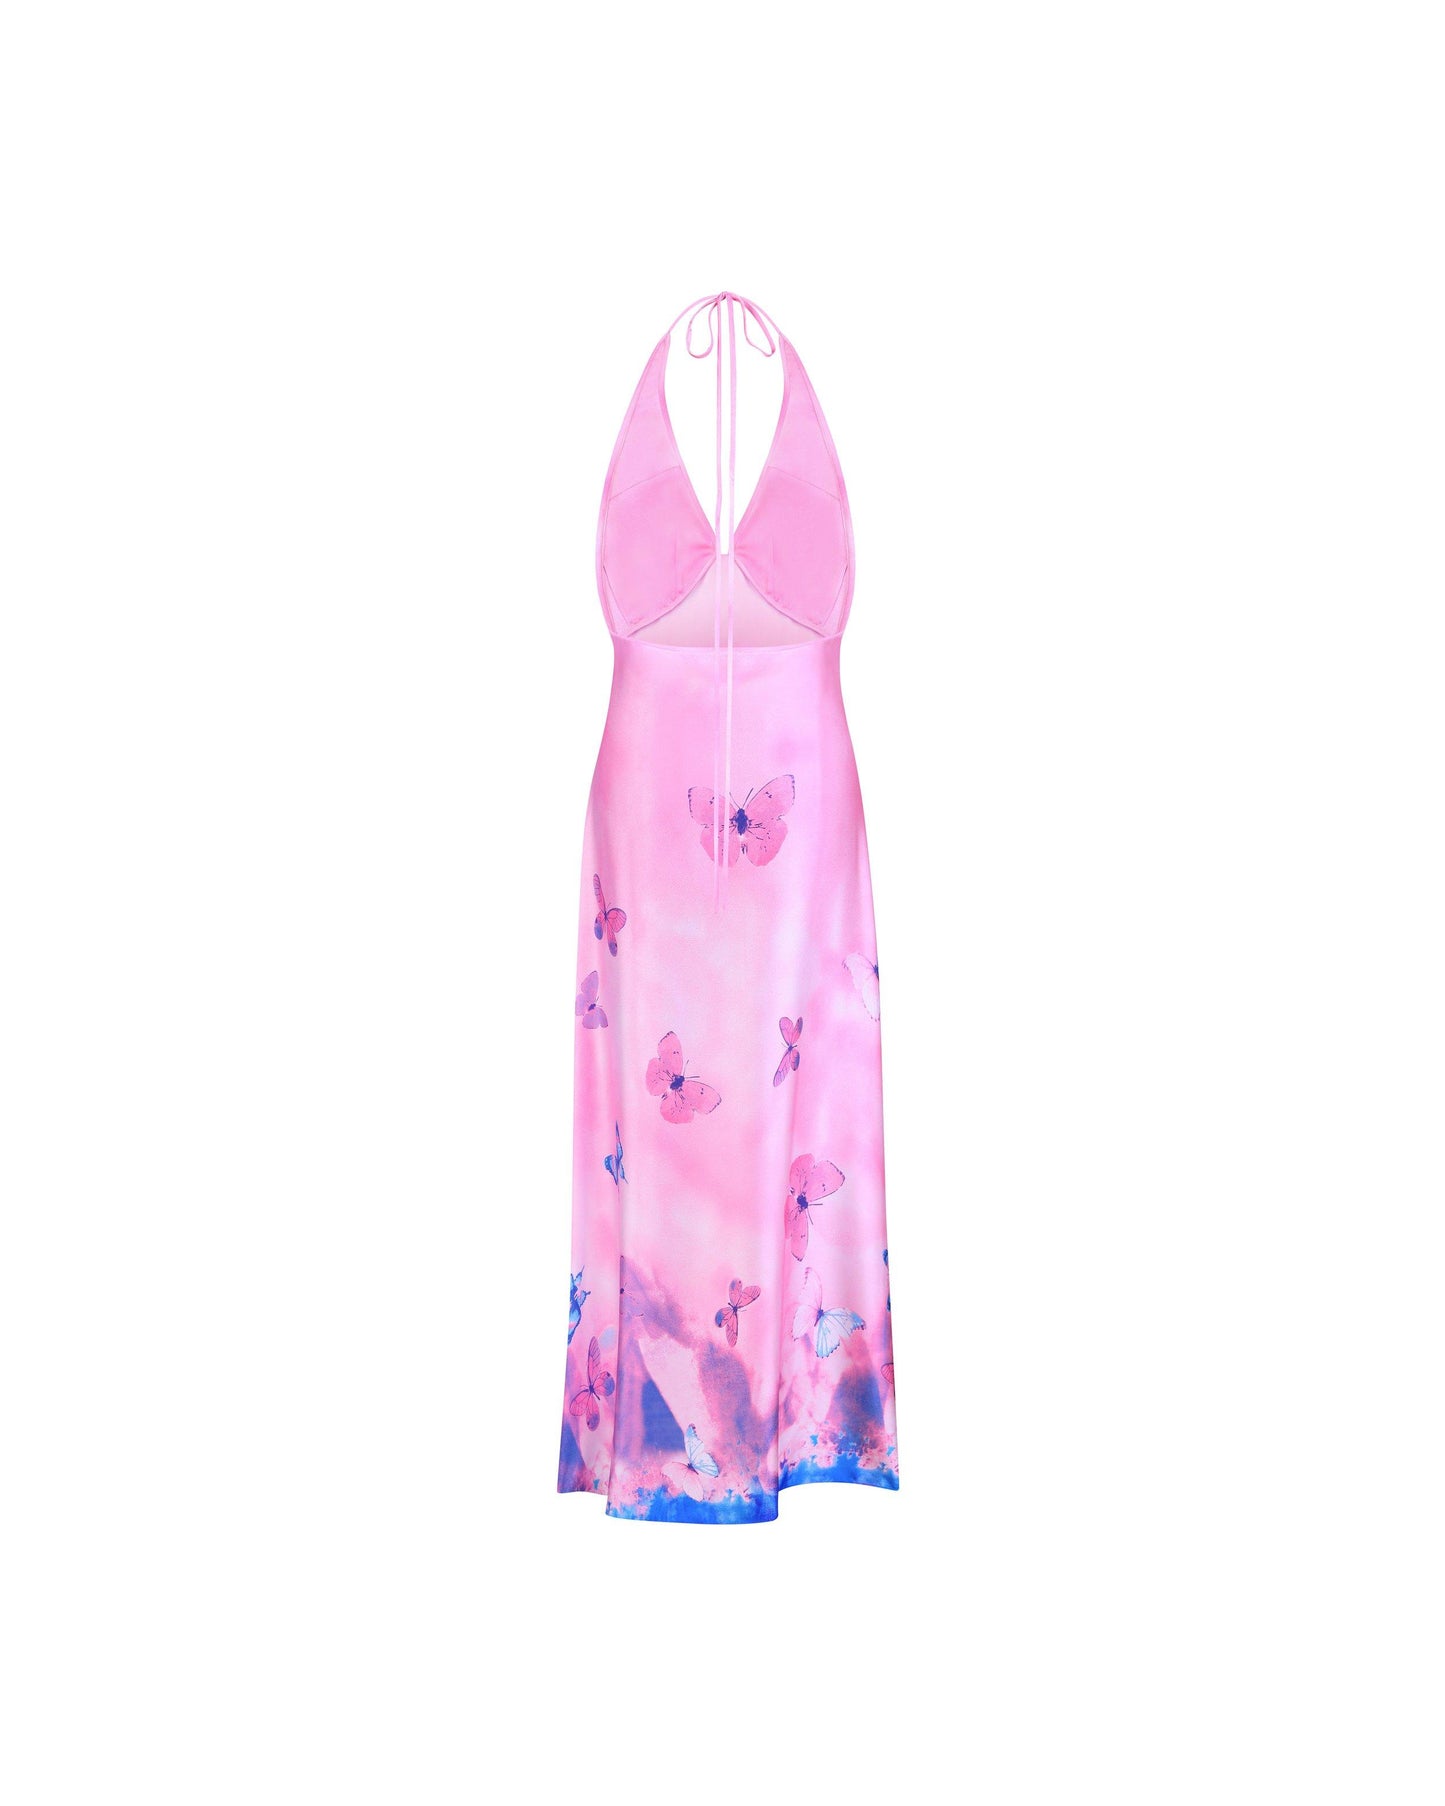 Ms. Pleat Dress (Pink Meadow)